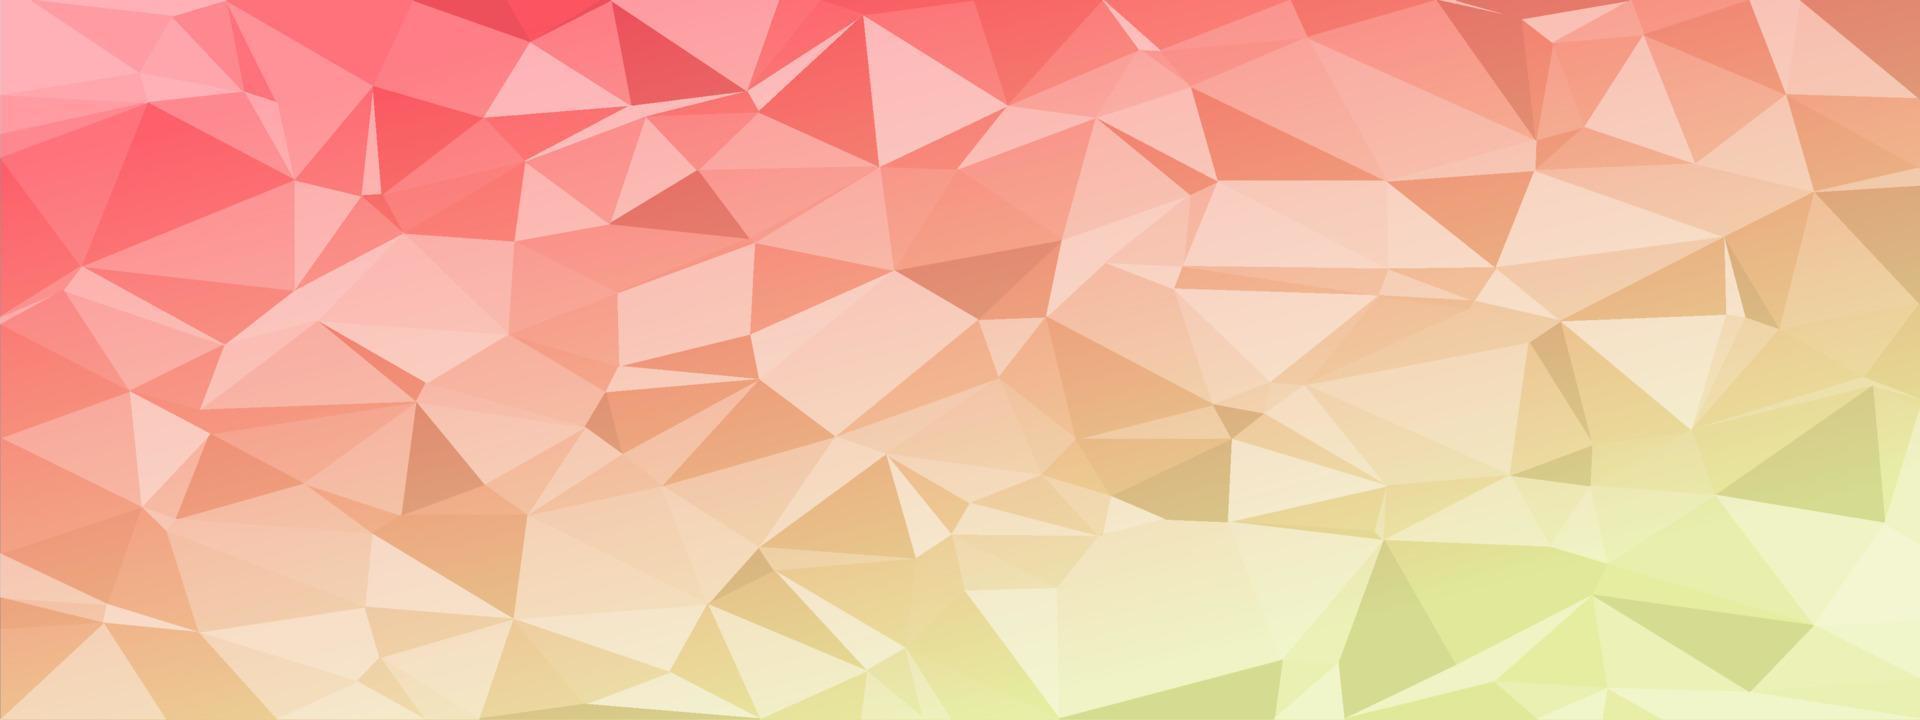 laag poly abstracte moderne achtergrond. felle kleuren chaotische driehoeken van variabele grootte en rotatie. minimalistische lay-out voor de websitebrochure van de bestemmingspagina van het visitekaartje. trendy vector eps10